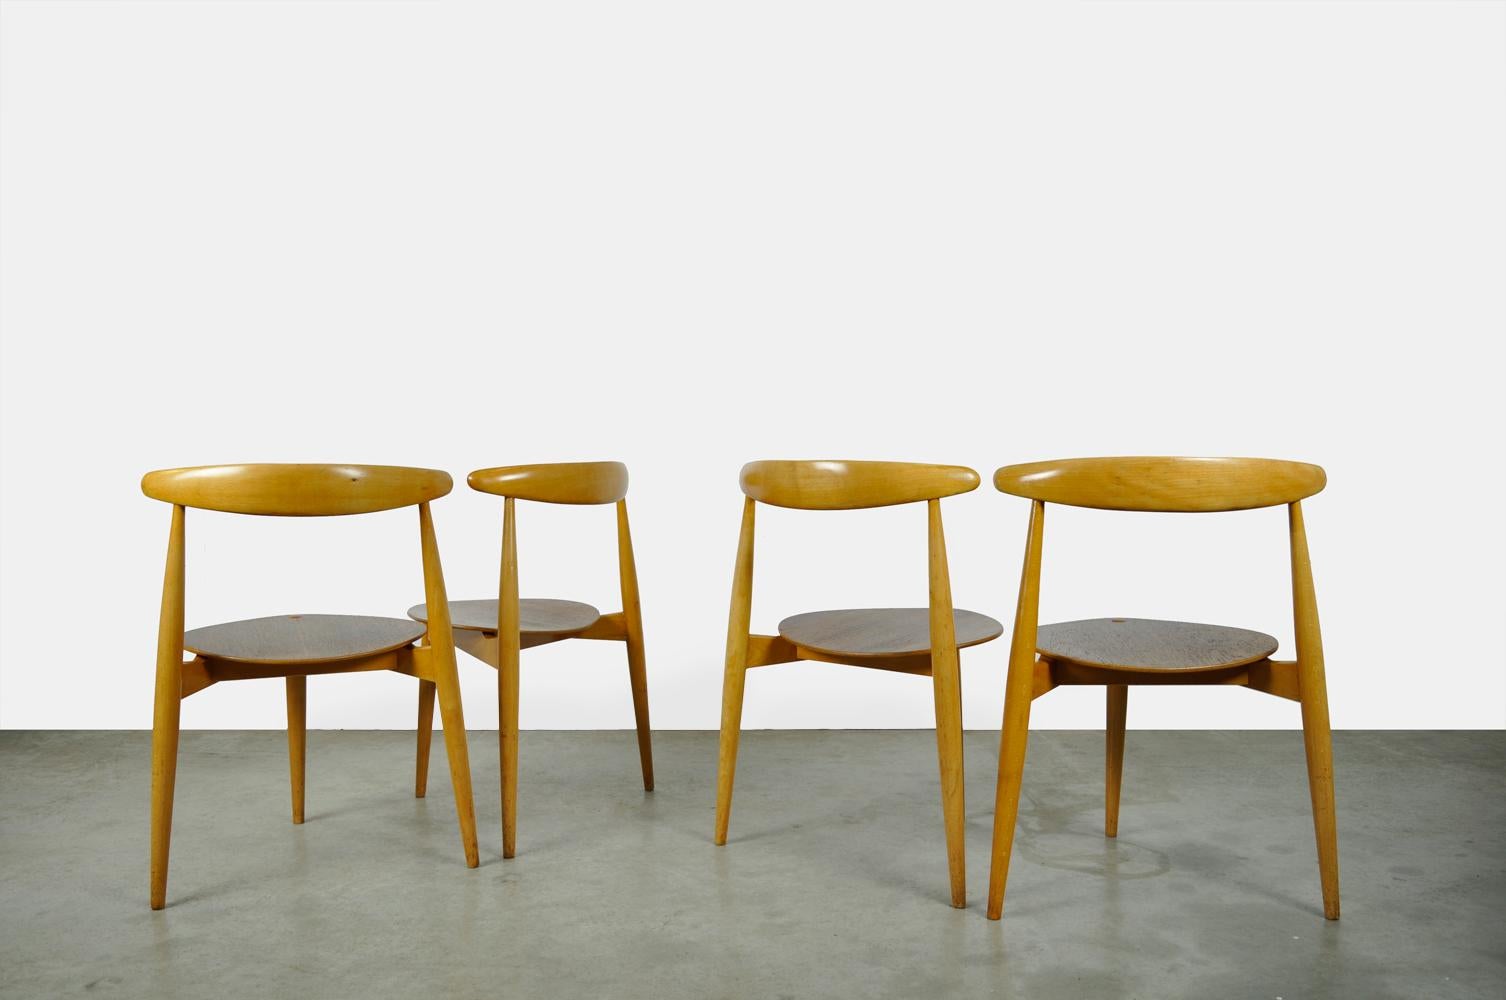 Schöner Satz von 4 Esstischstühlen, entworfen von Hans J. Wegner und hergestellt von Fritz Hansen, Dänemark 1950er Jahre. Die dreieckige Konstruktion der besonderen Stühle besteht aus einer Kombination von Buchen- und Teakholz. Das Gestell ist aus